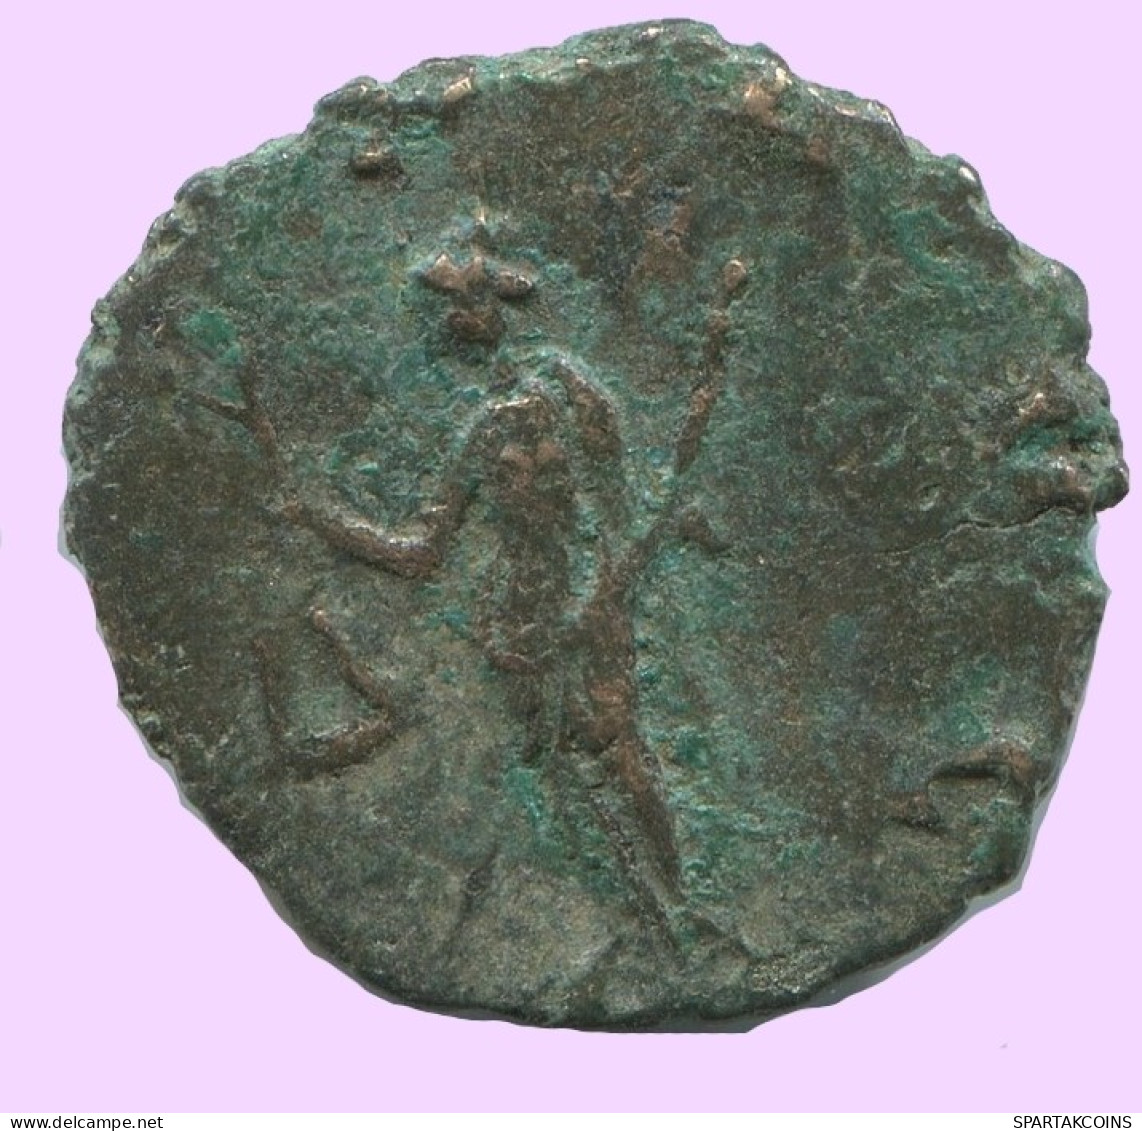 LATE ROMAN IMPERIO Follis Antiguo Auténtico Roman Moneda 2.1g/17mm #ANT2039.7.E.A - La Caduta Dell'Impero Romano (363 / 476)